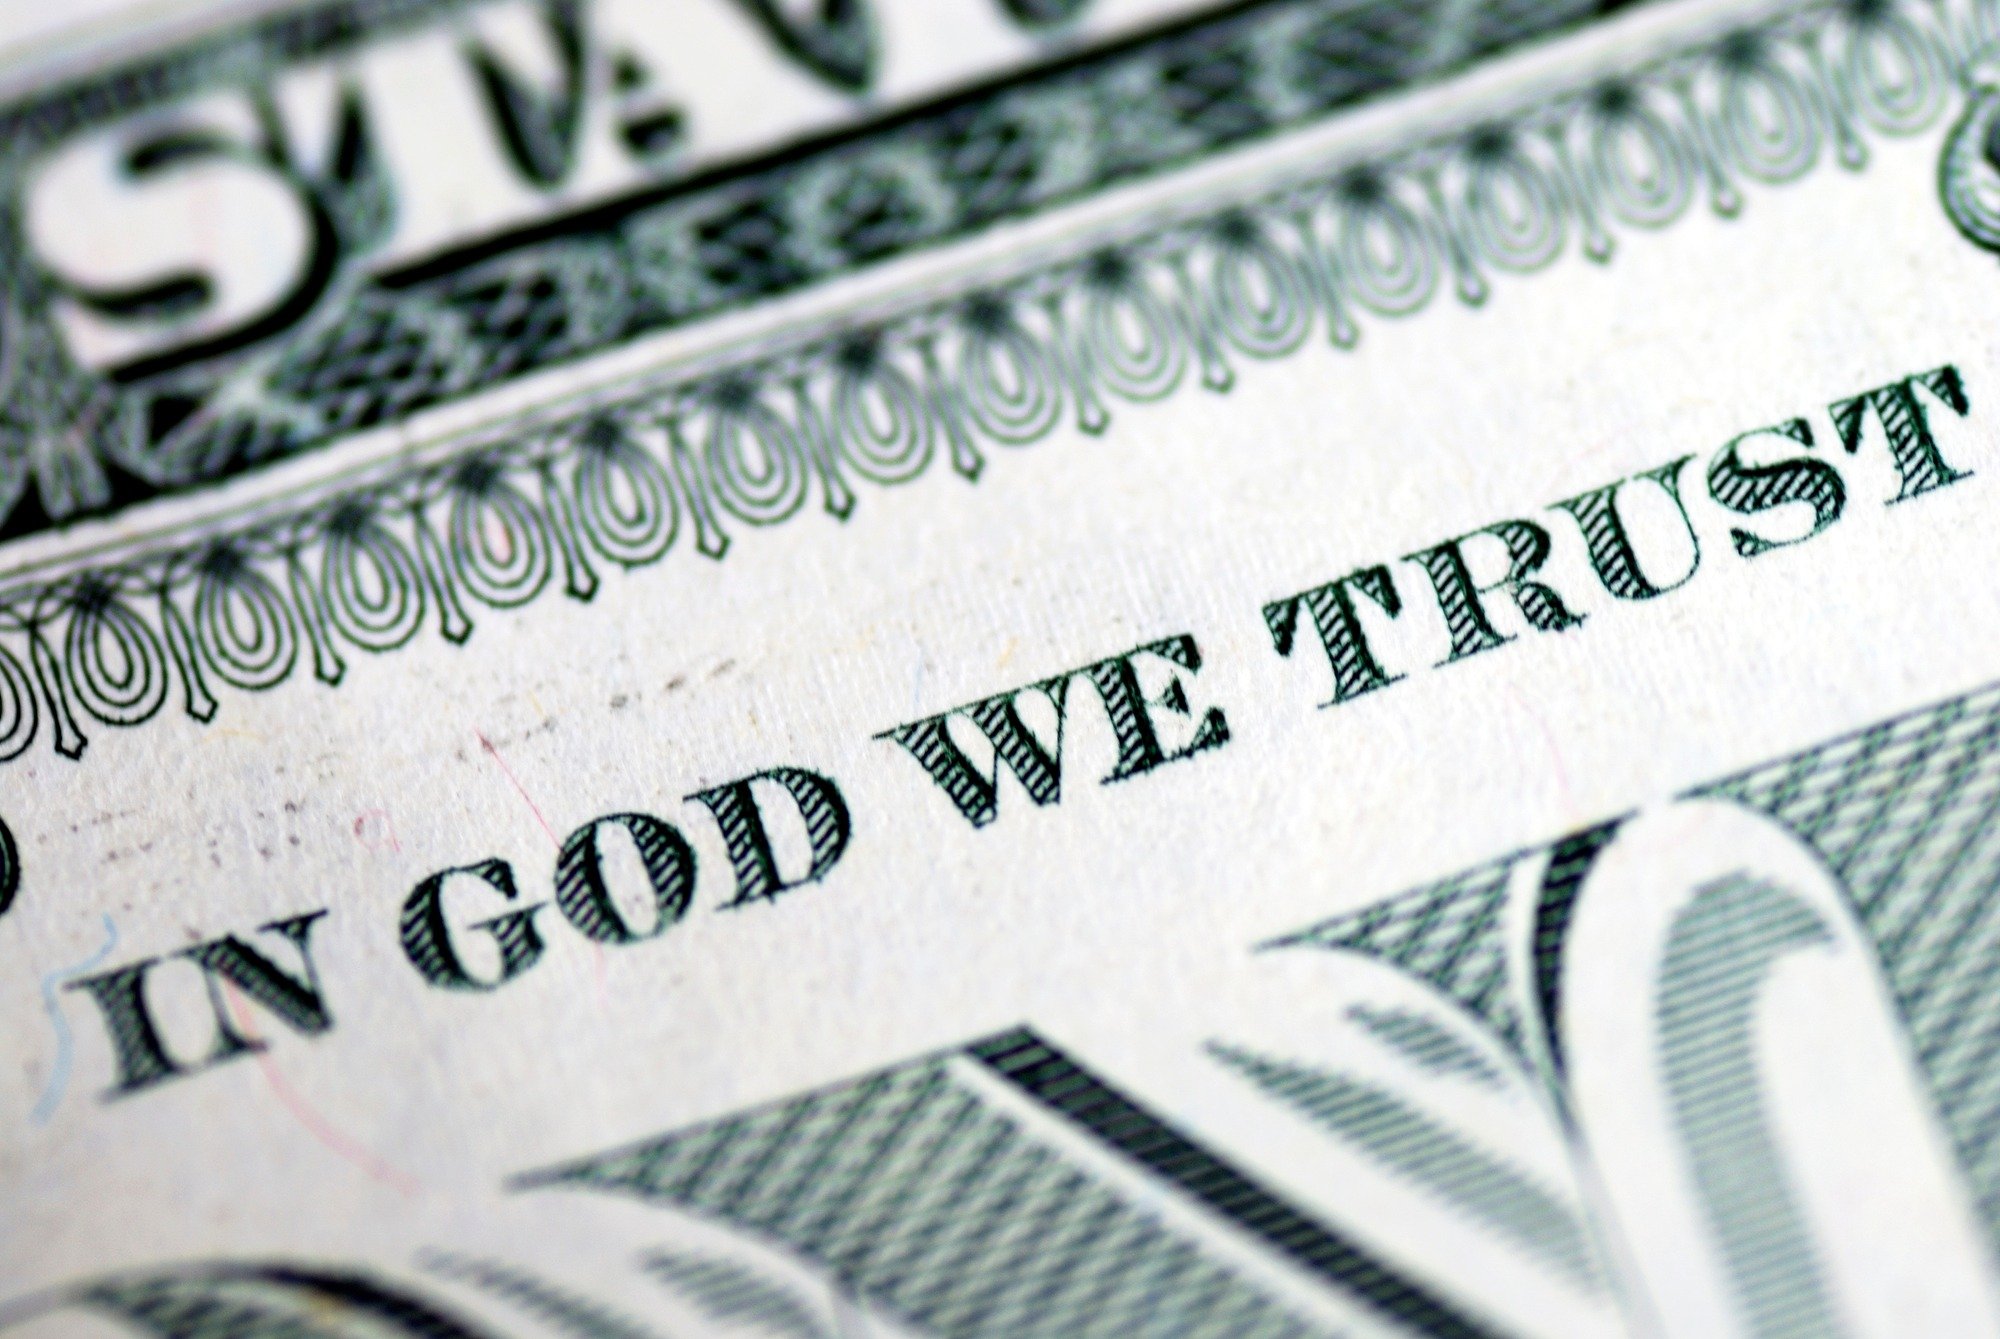 In God We Trust?